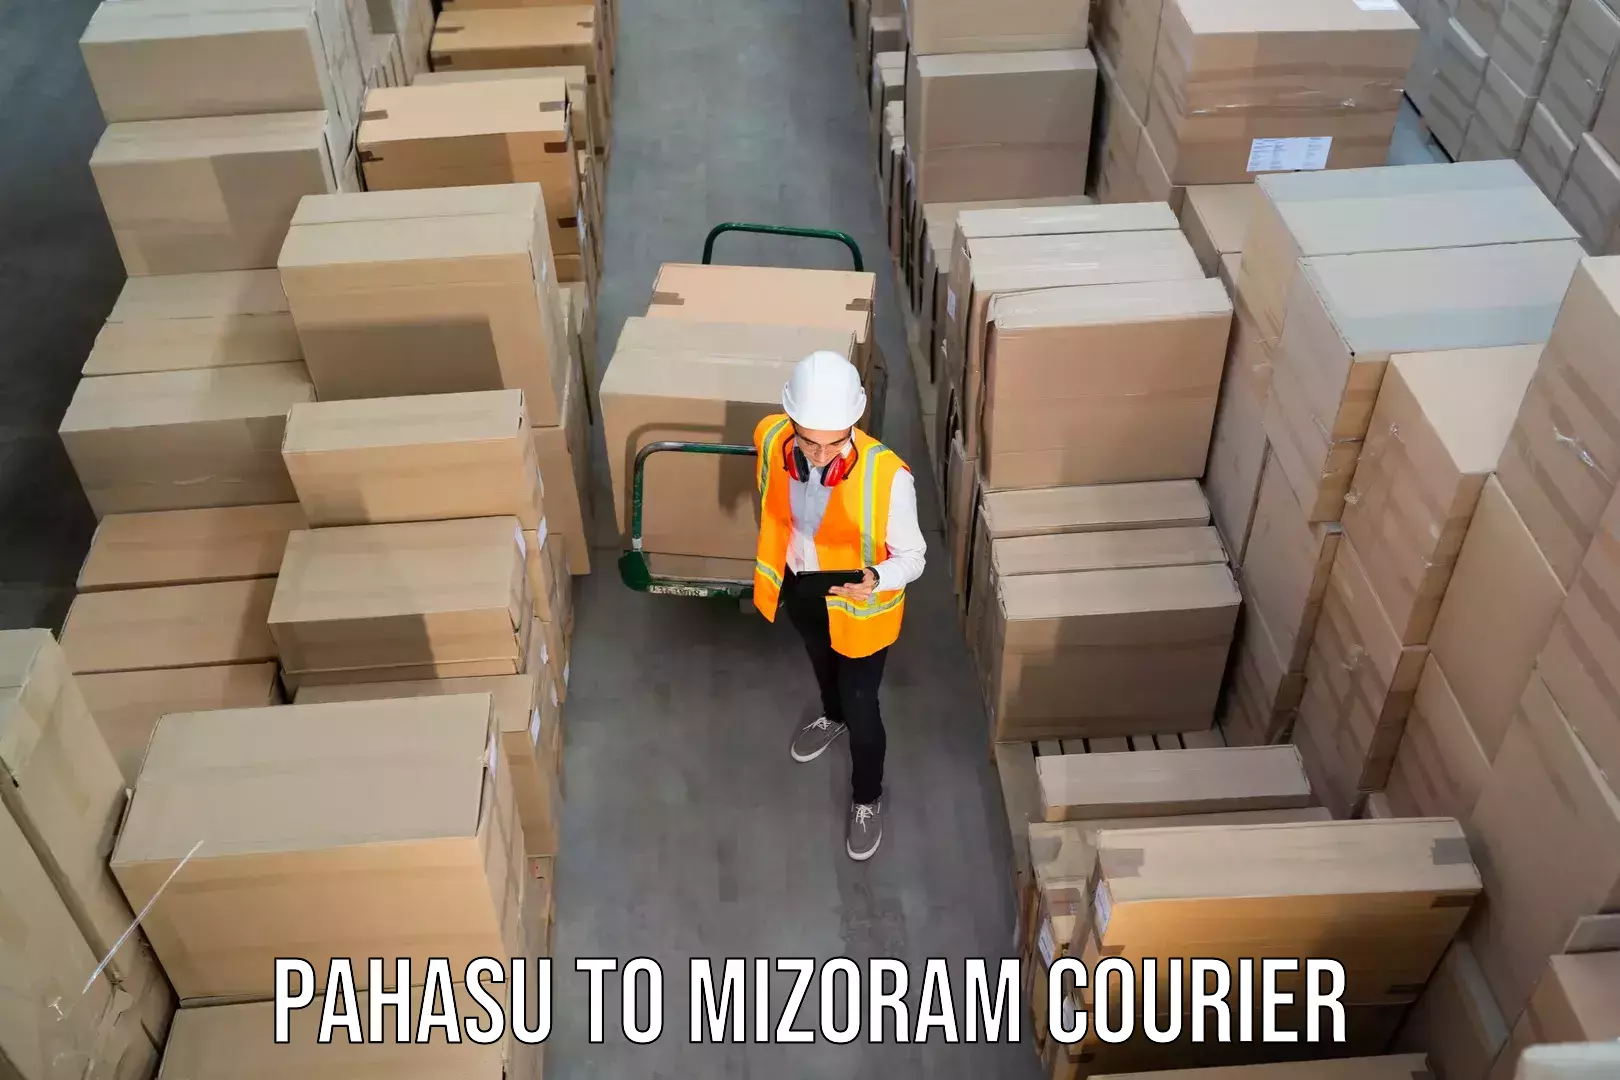 Weekend courier service Pahasu to Mizoram